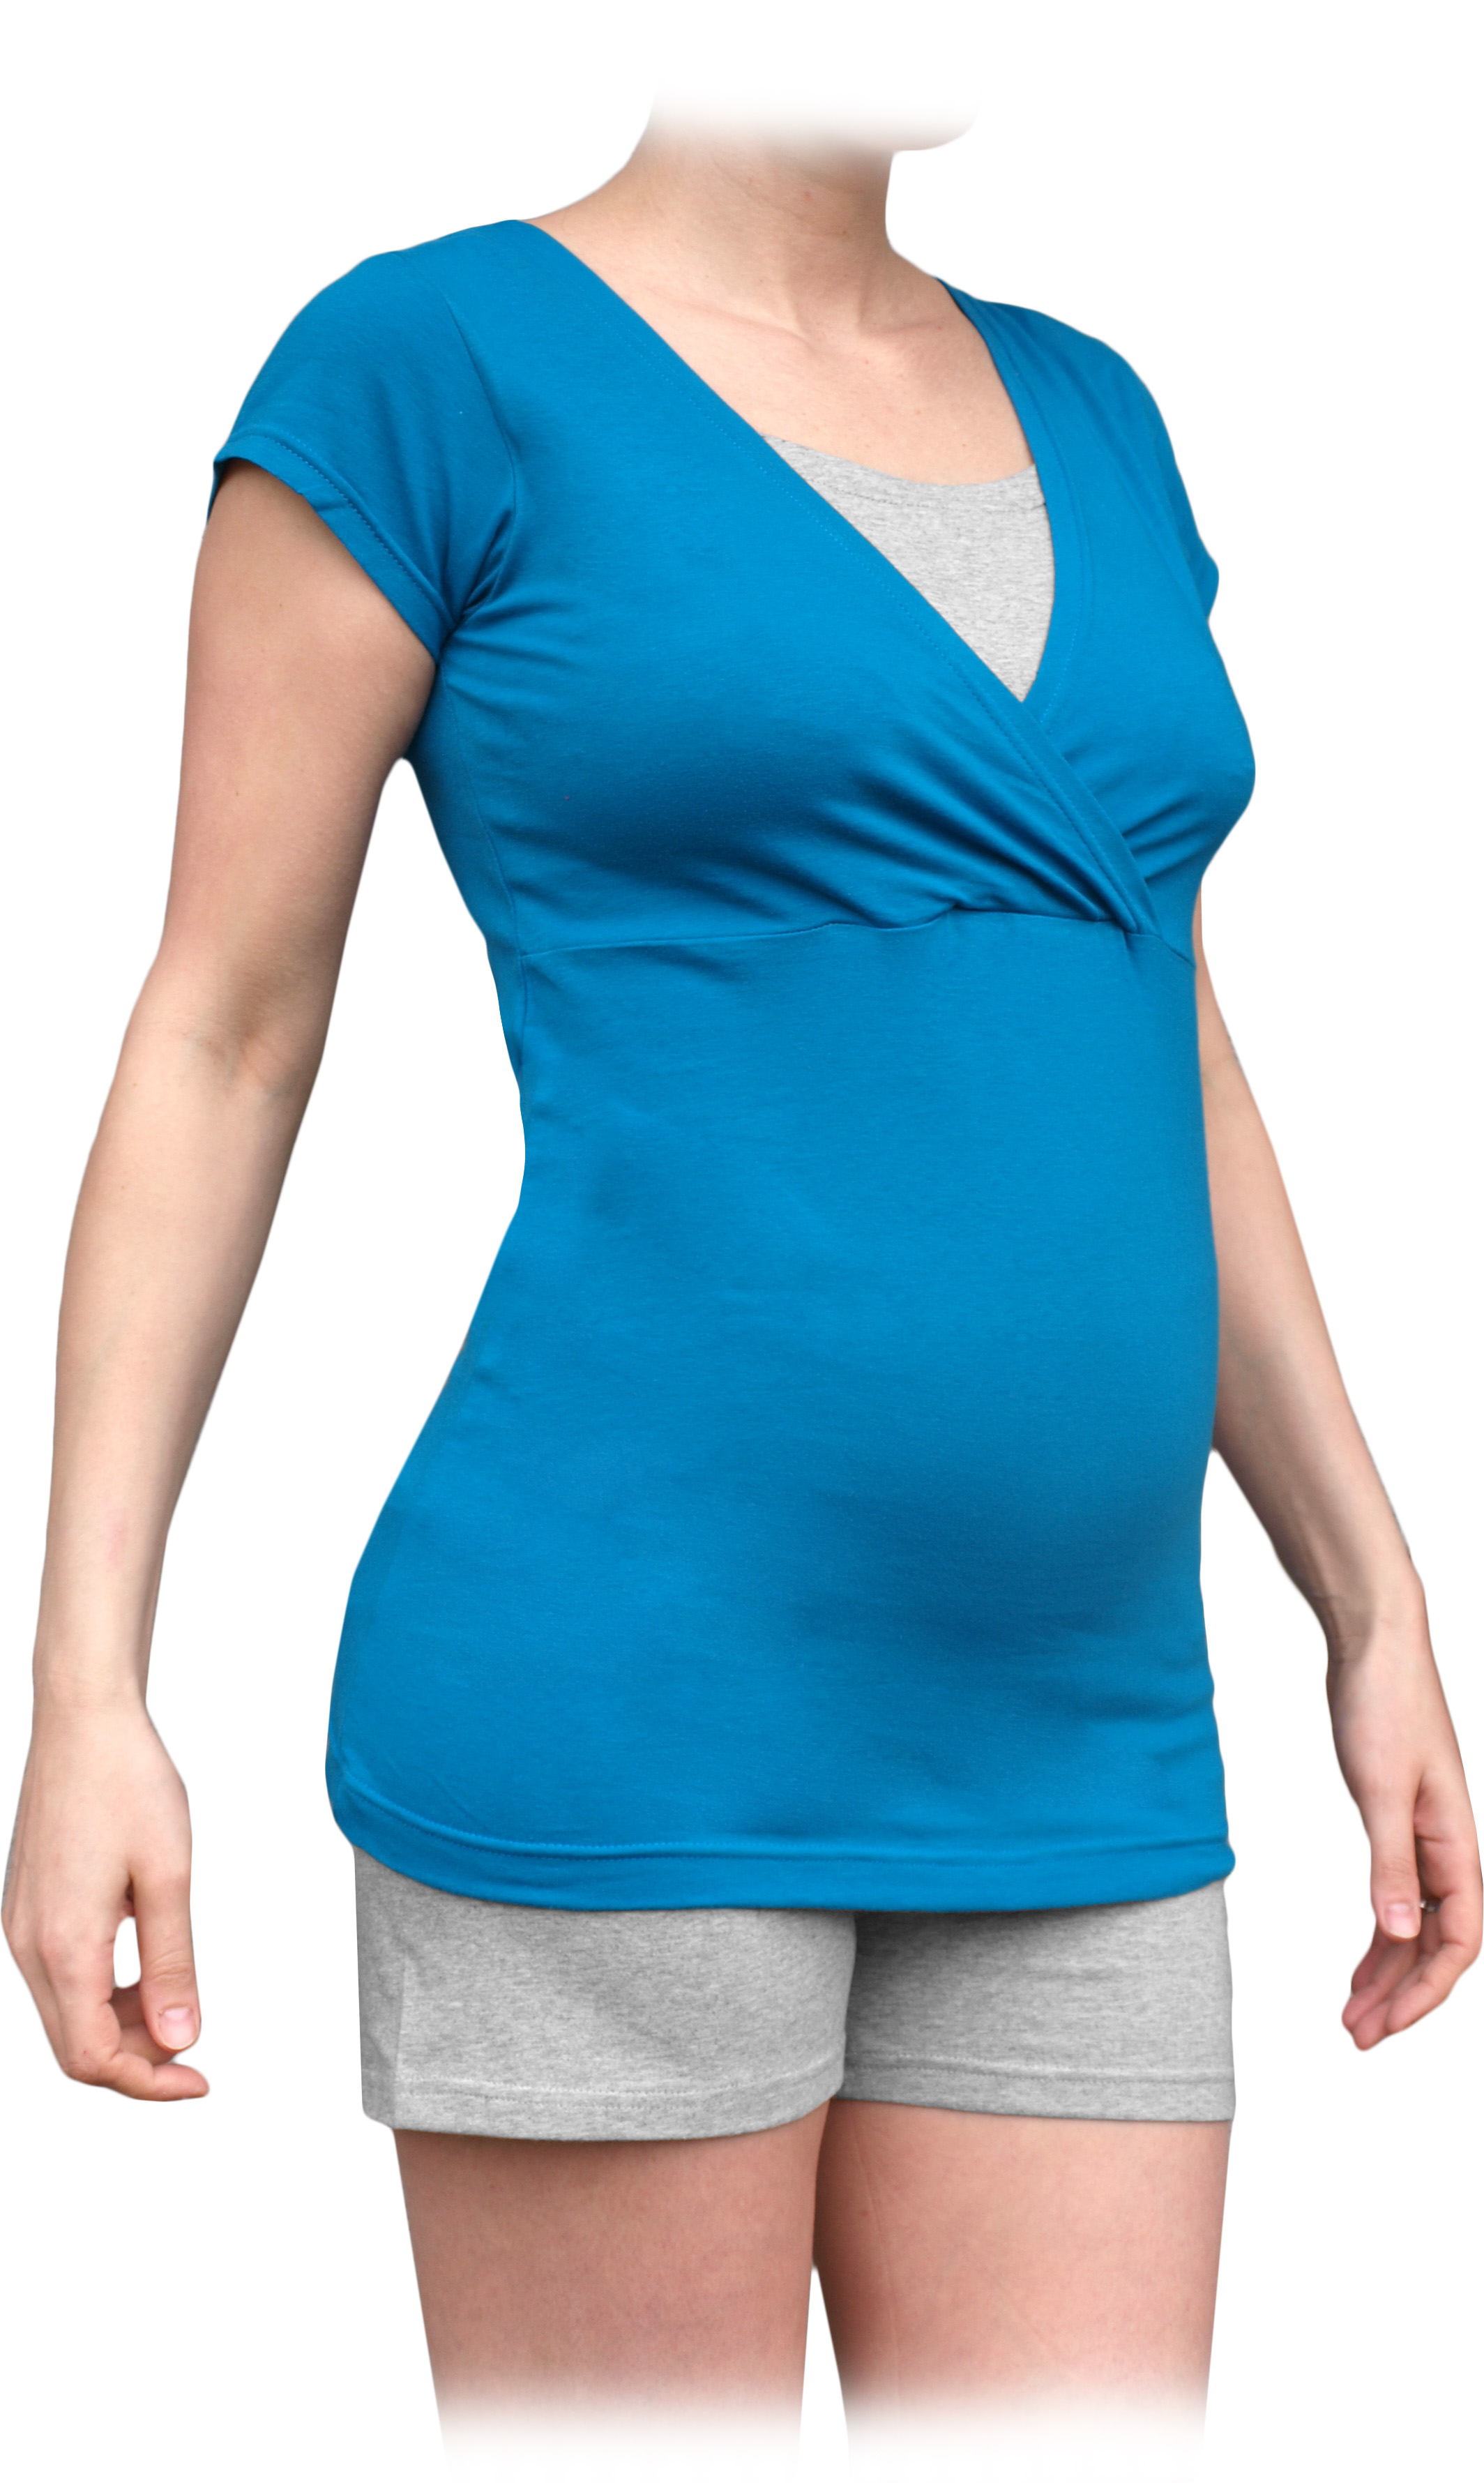 Tehotenské a dojčiace pyžamo, krátke, petrolejovej + sivý melír